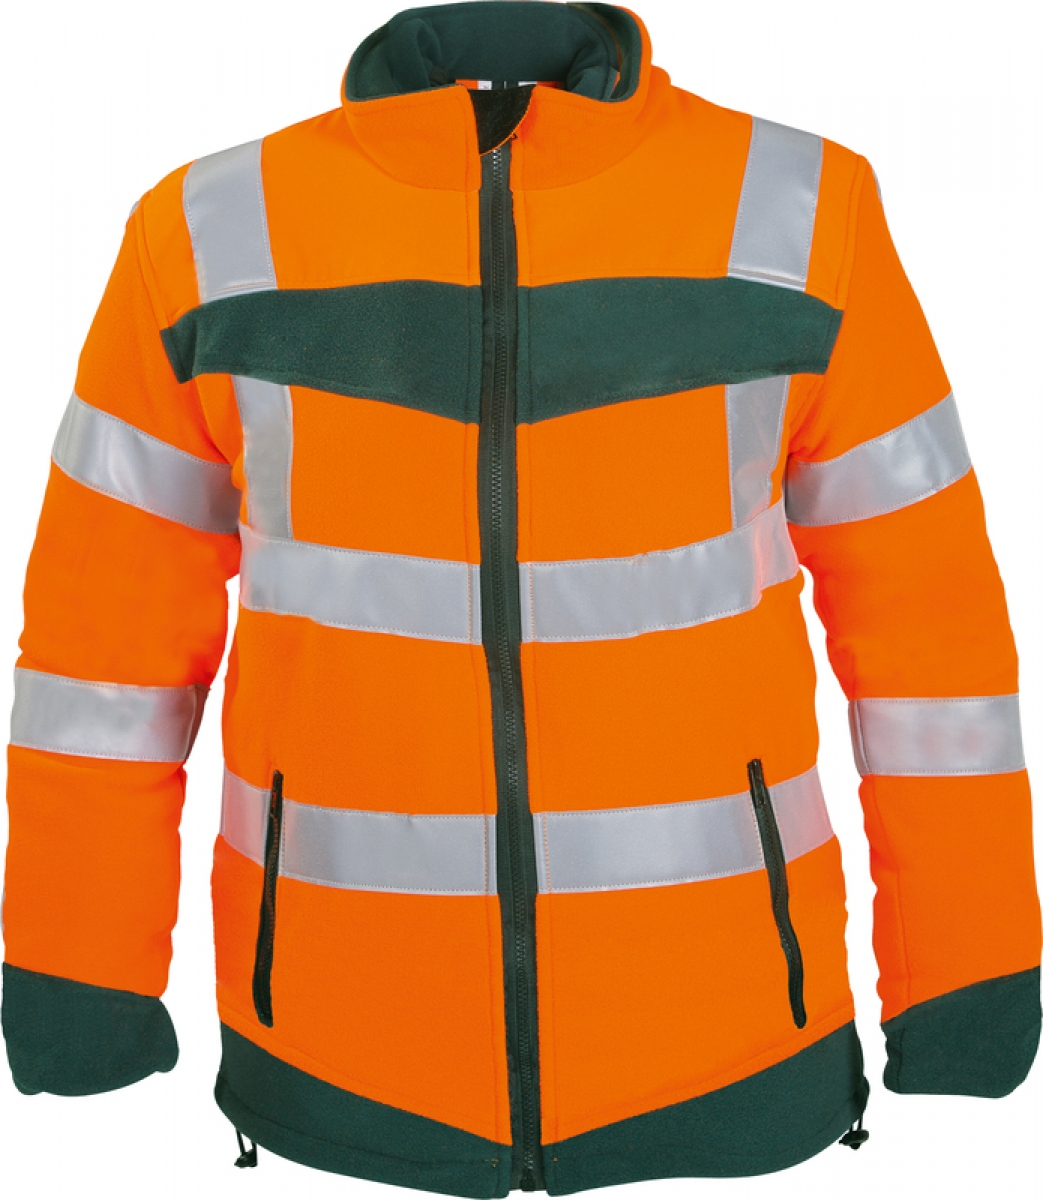 WATEX-Warnschutz, Fleece-Jacke, 320 g/m, leuchtorange/grn